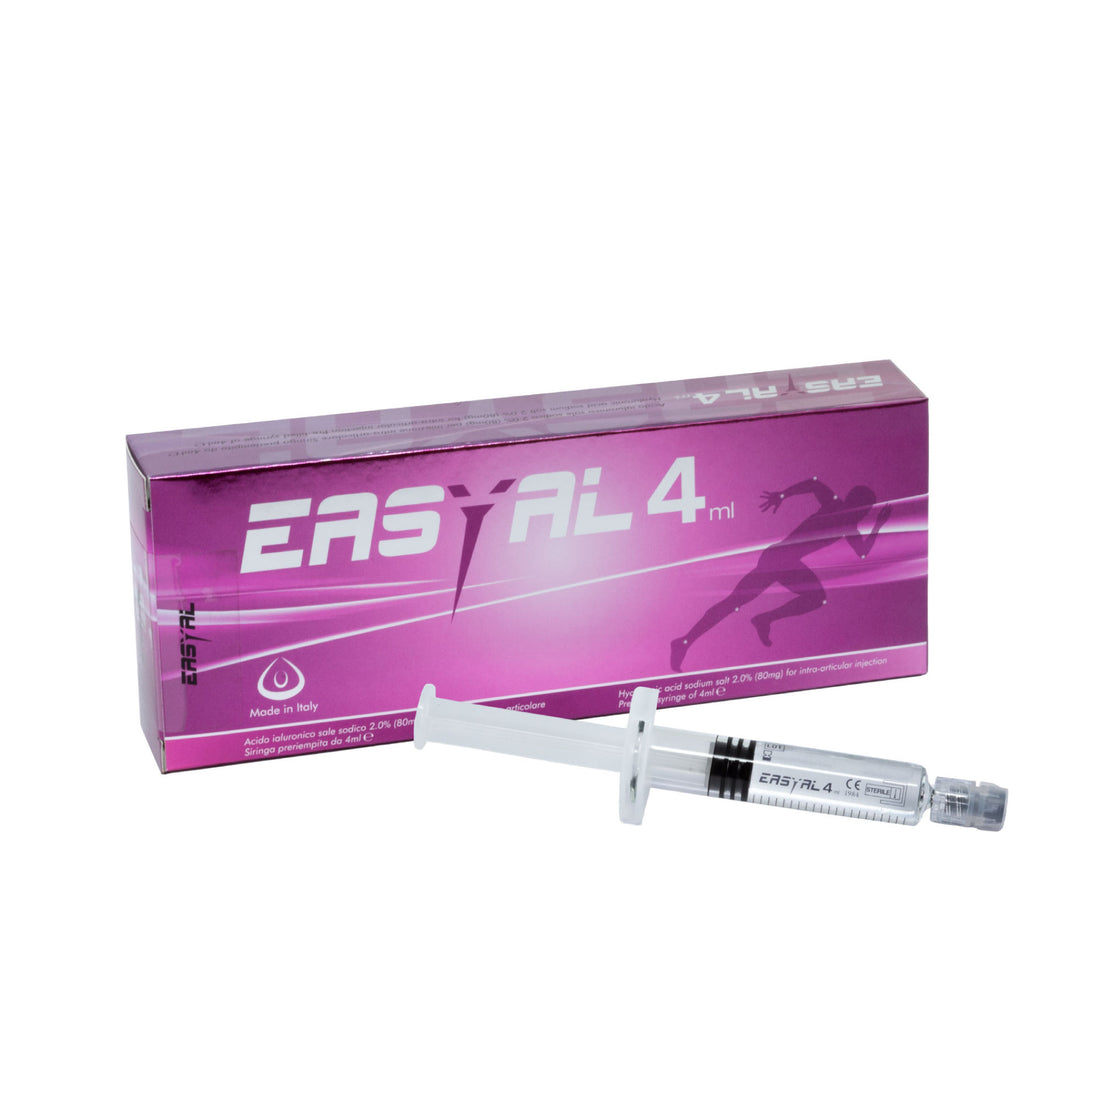 EASYAL 4ml - Sól kwasu hialuronowego - Leczenie chorób zwyrodnieniowych/zapalnych stawów